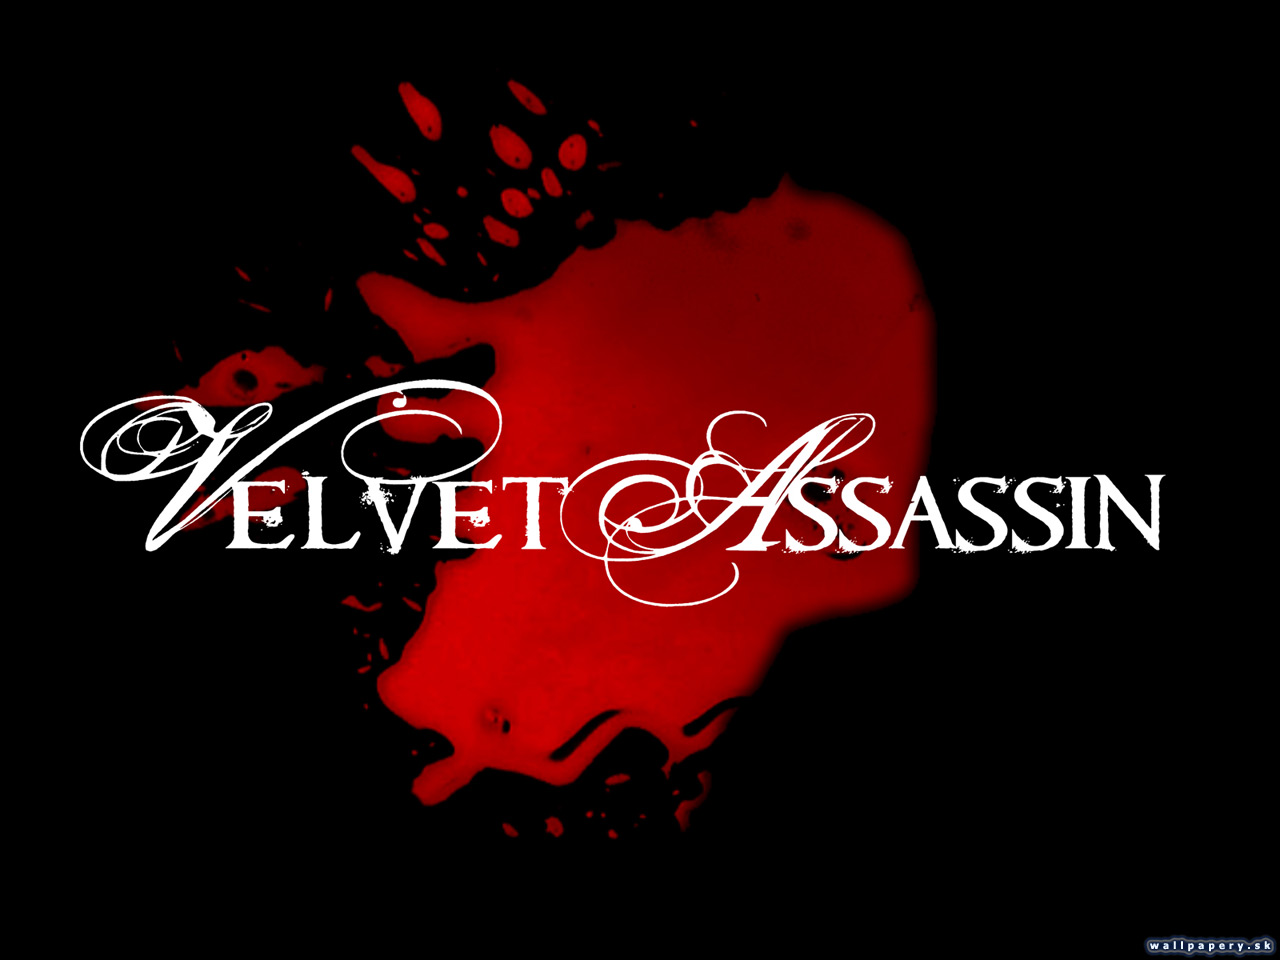 Velvet Assassin - wallpaper 9